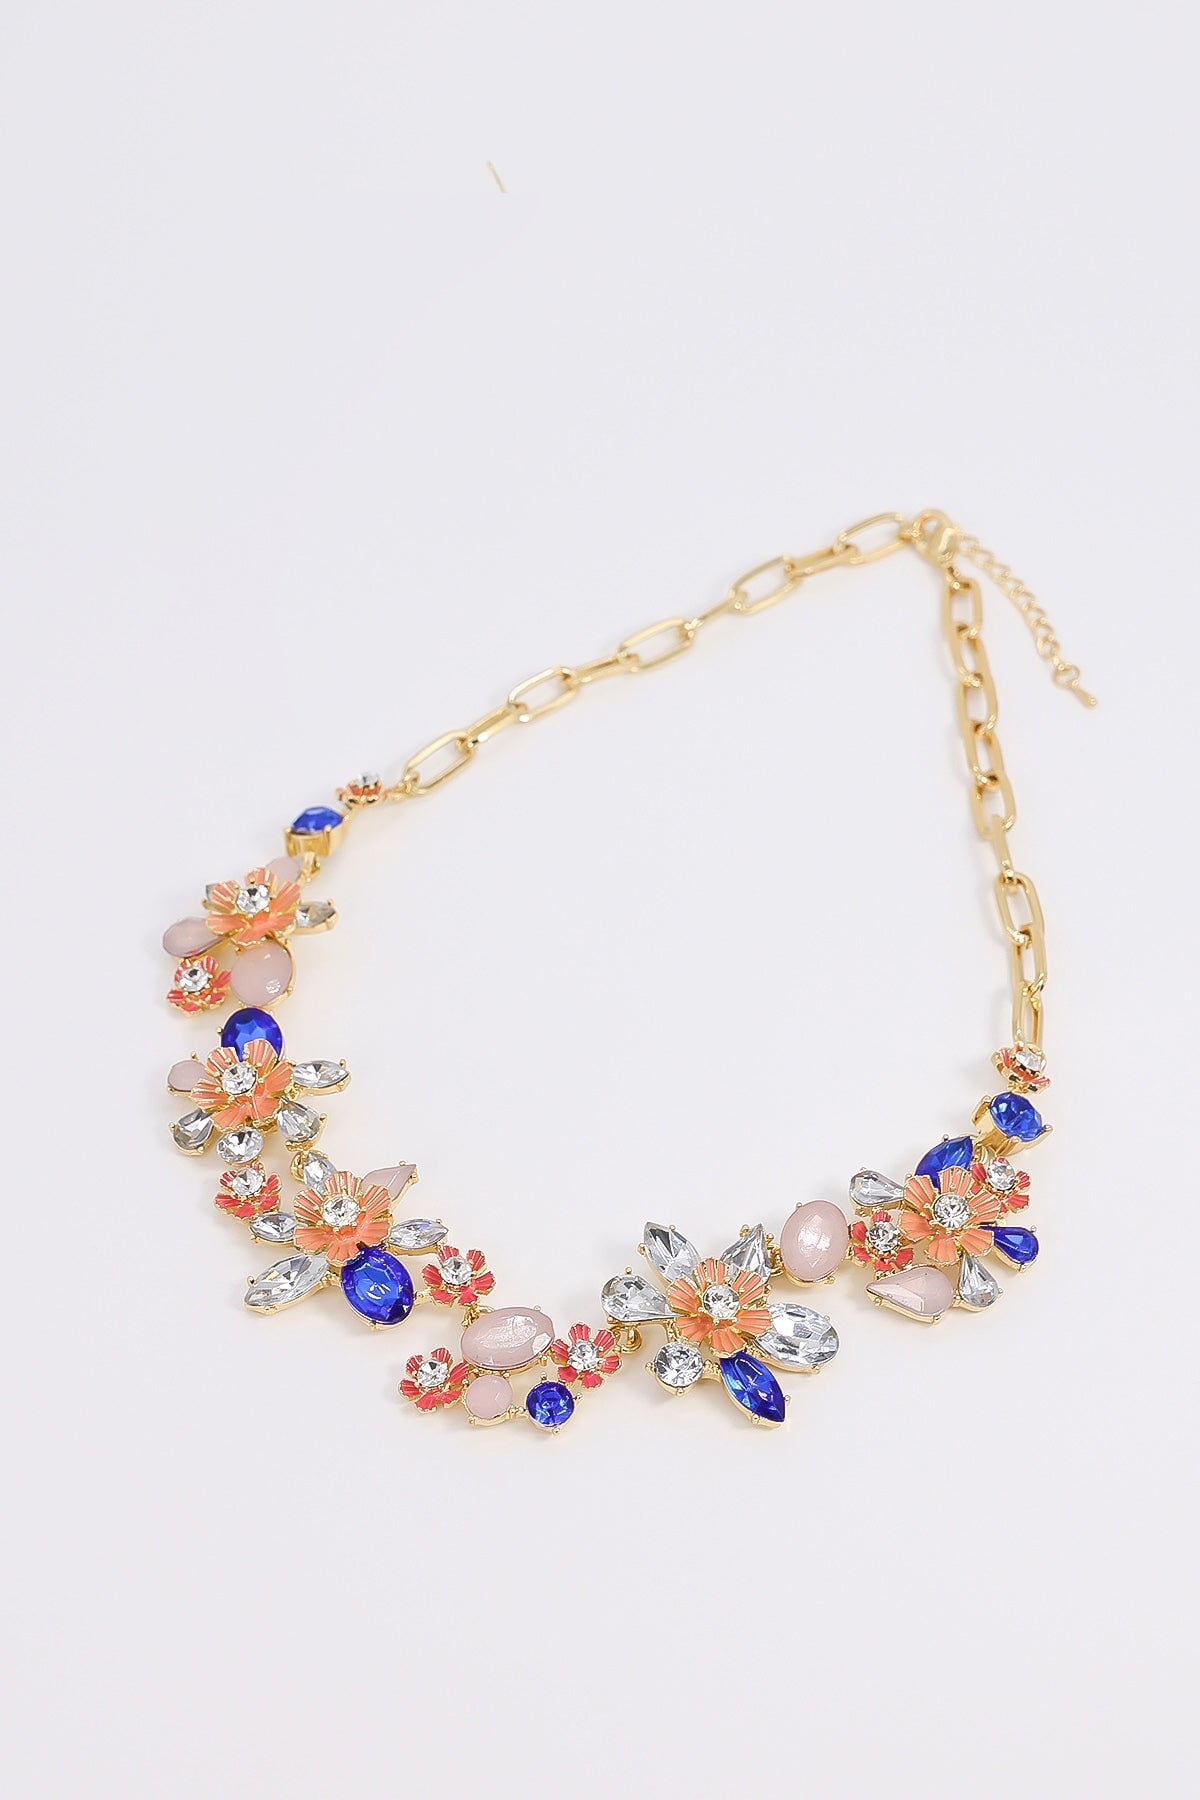 Swarovski Symbolic necklace, Moon, infinity, hand, evil eye and horseshoe,  Blue, Rose gold-tone plated